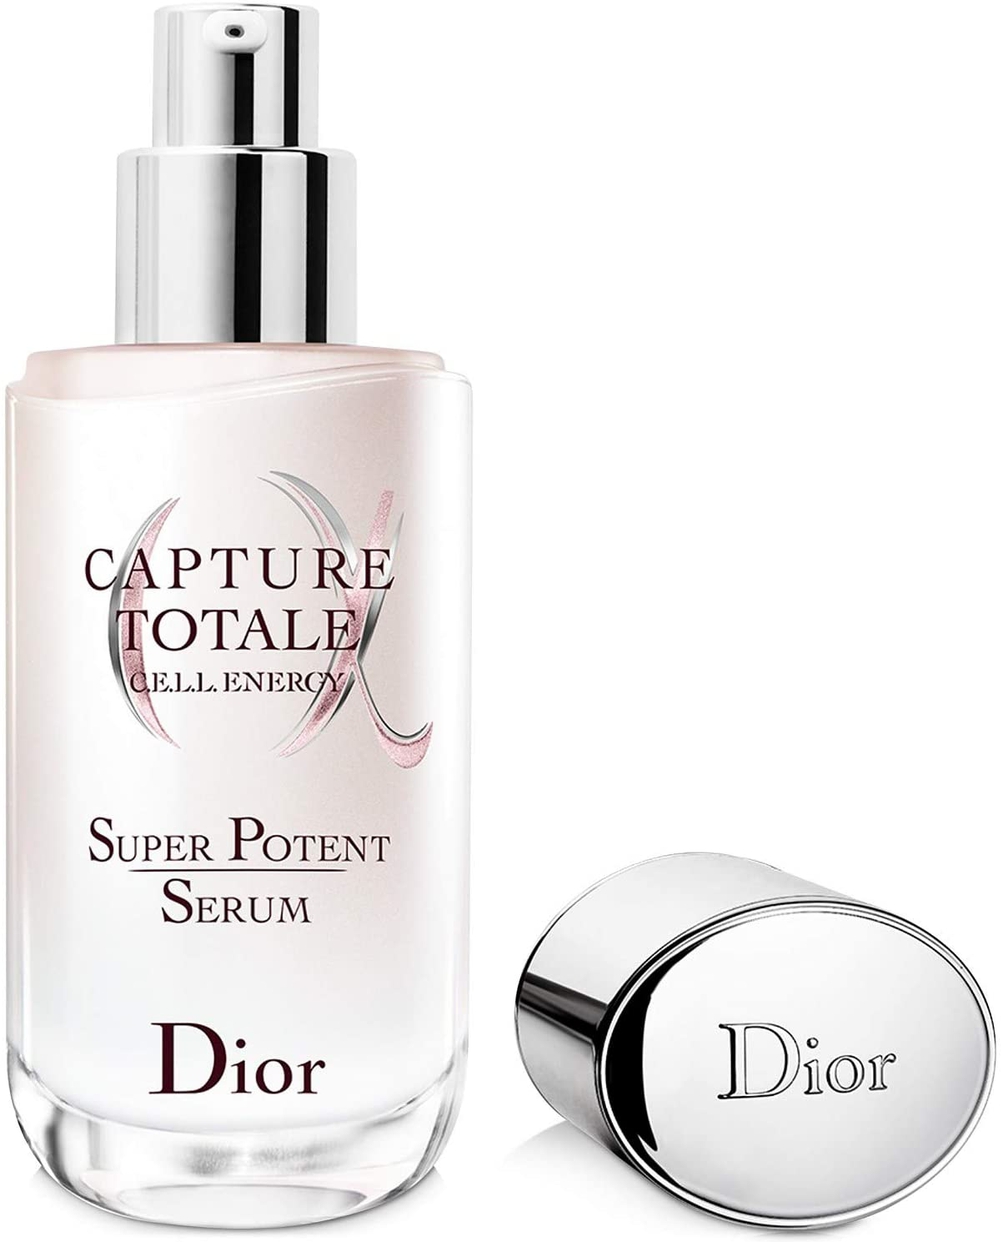 Dior(ディオール) カプチュール トータル セル ENGY スーパー セラムの商品画像7 